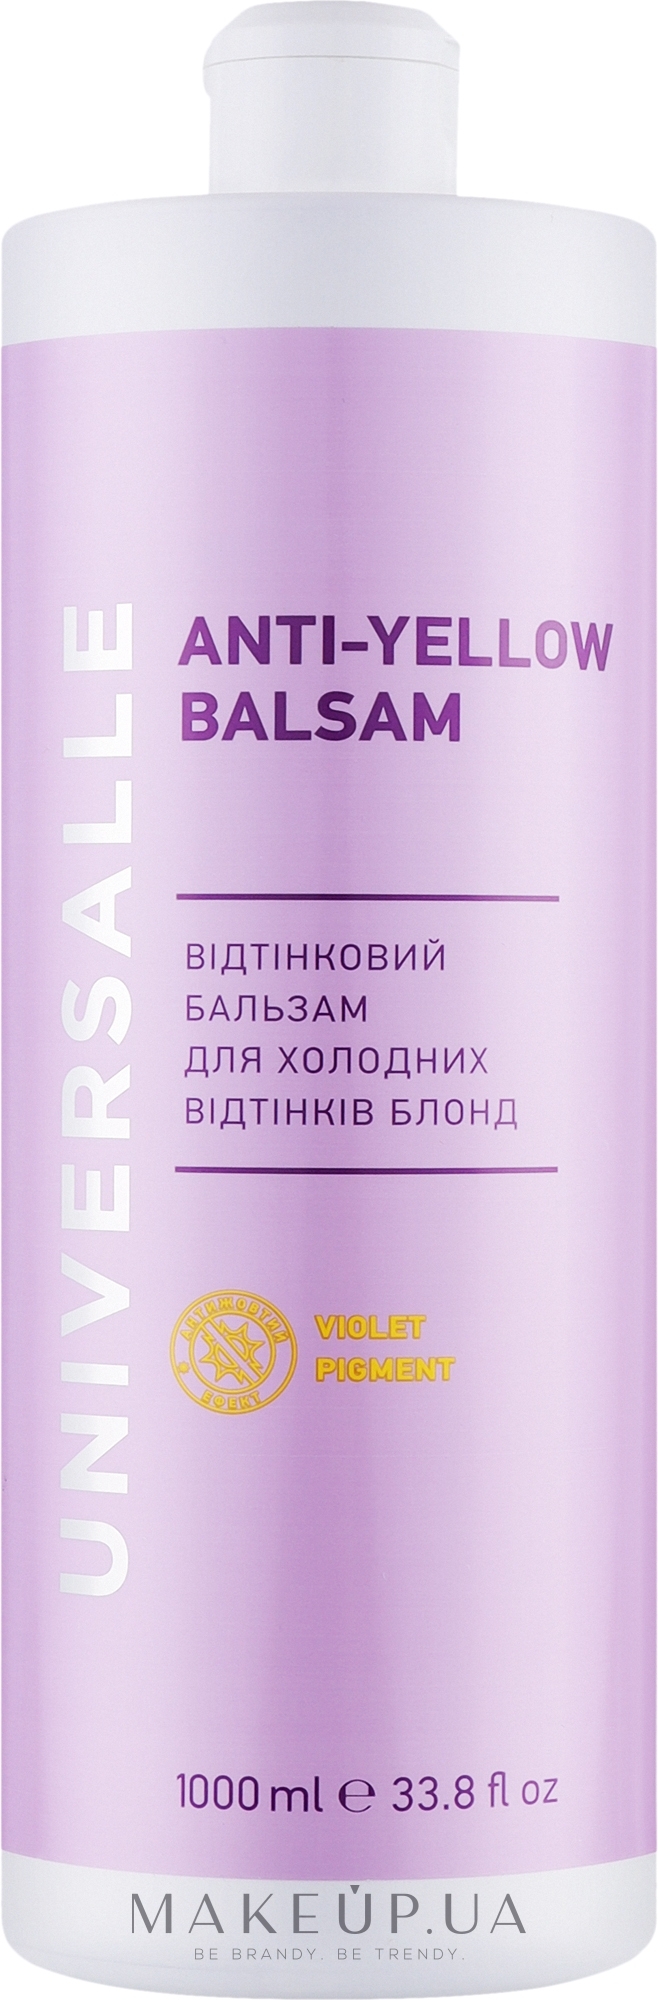 Відтінковий бальзам для волосся - Universalle Anti-Yellow Balsam — фото 1000ml